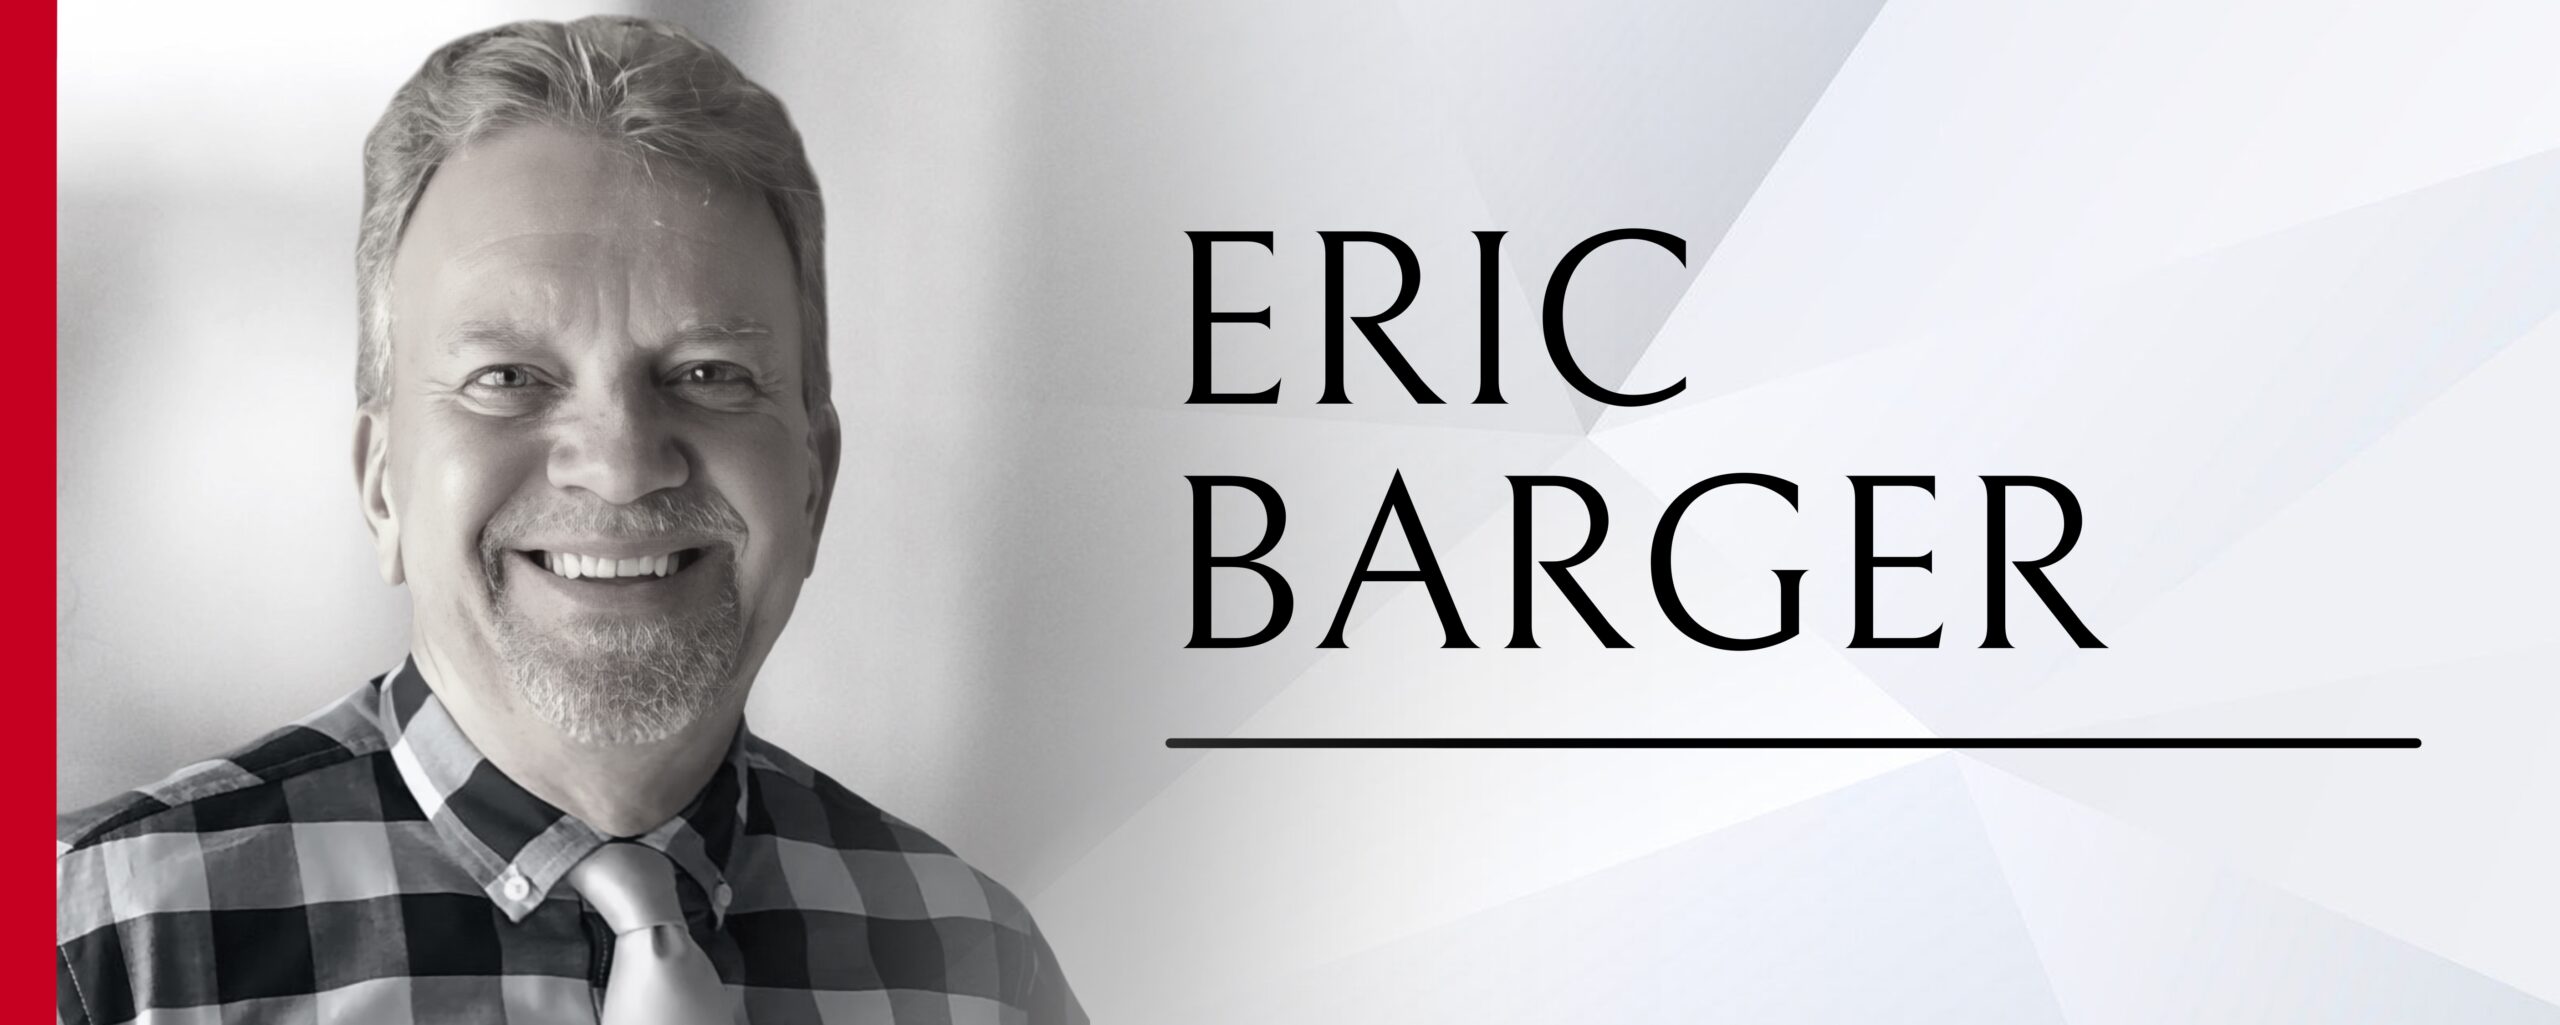  Eric Barger